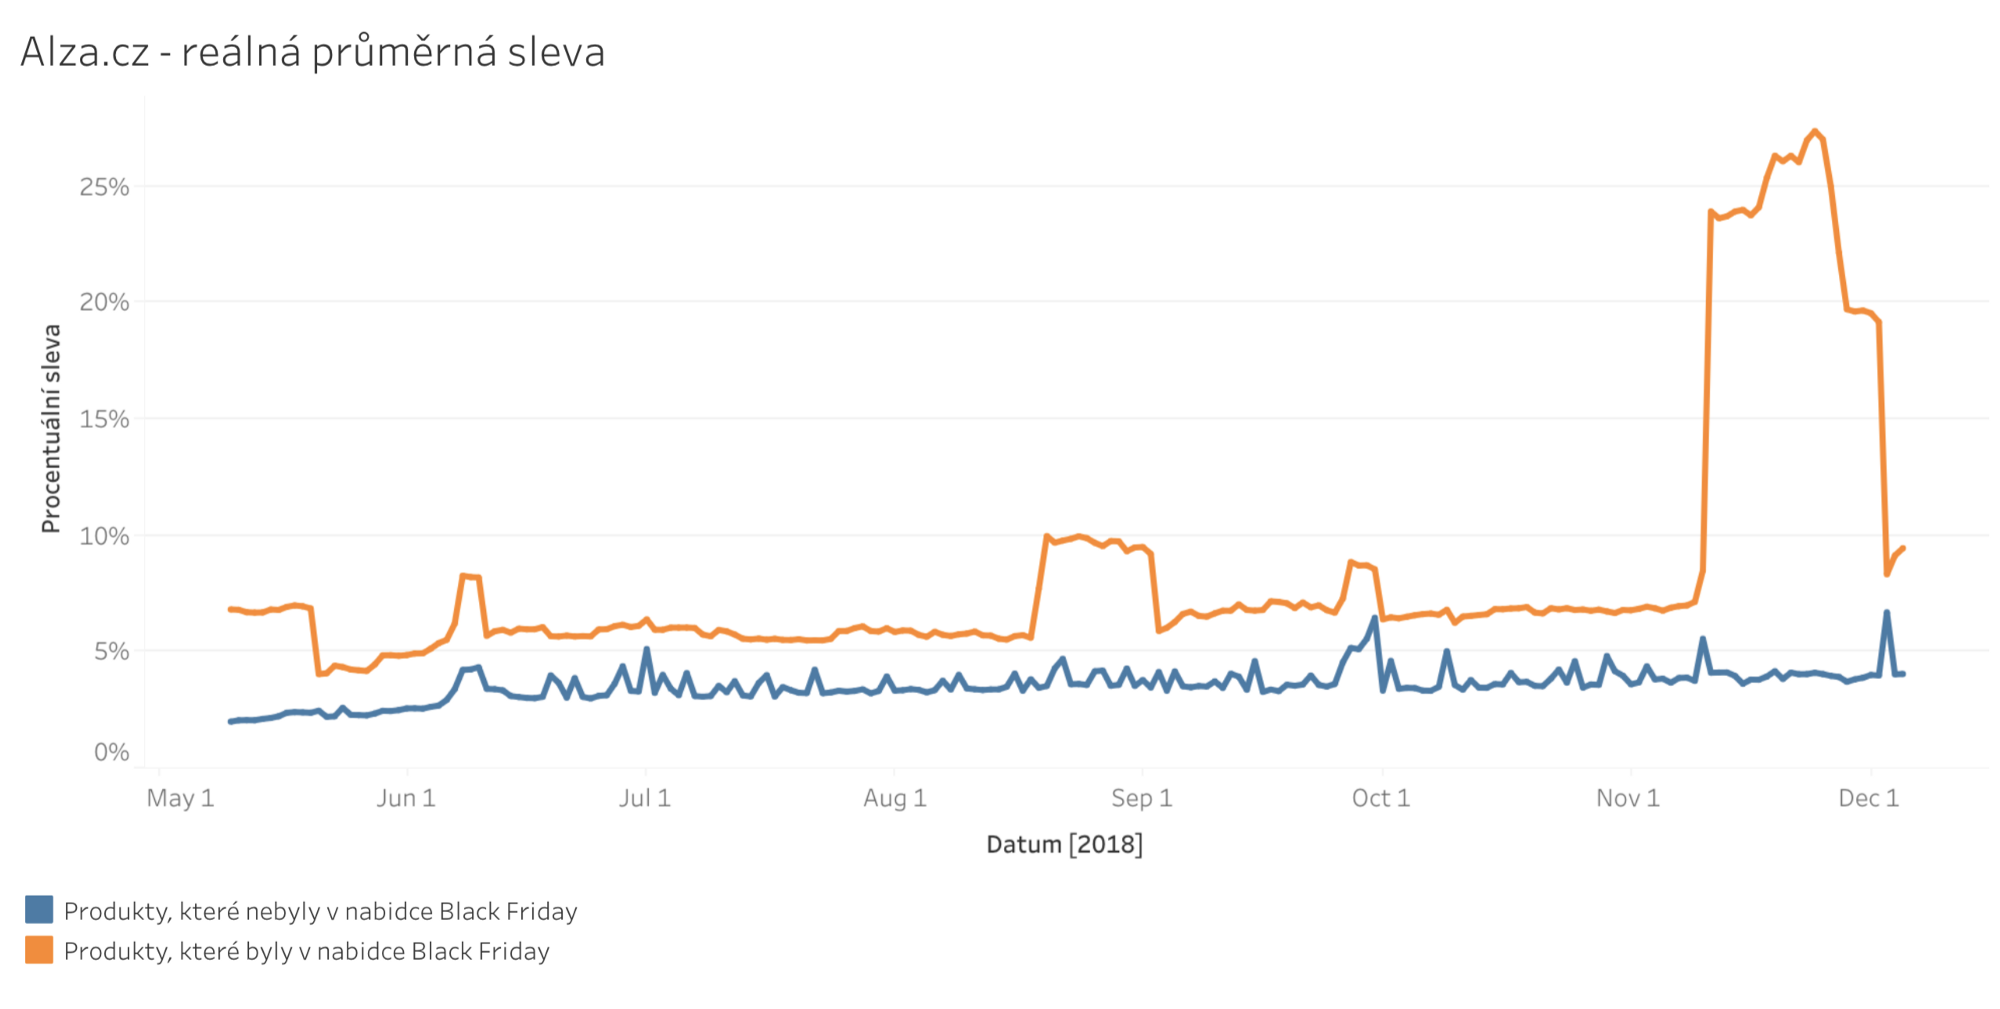 graf srovnávajíci procentuálni slevu produktů alza.cz, které nebyly v nabídce Black Friday s těmi, co byly